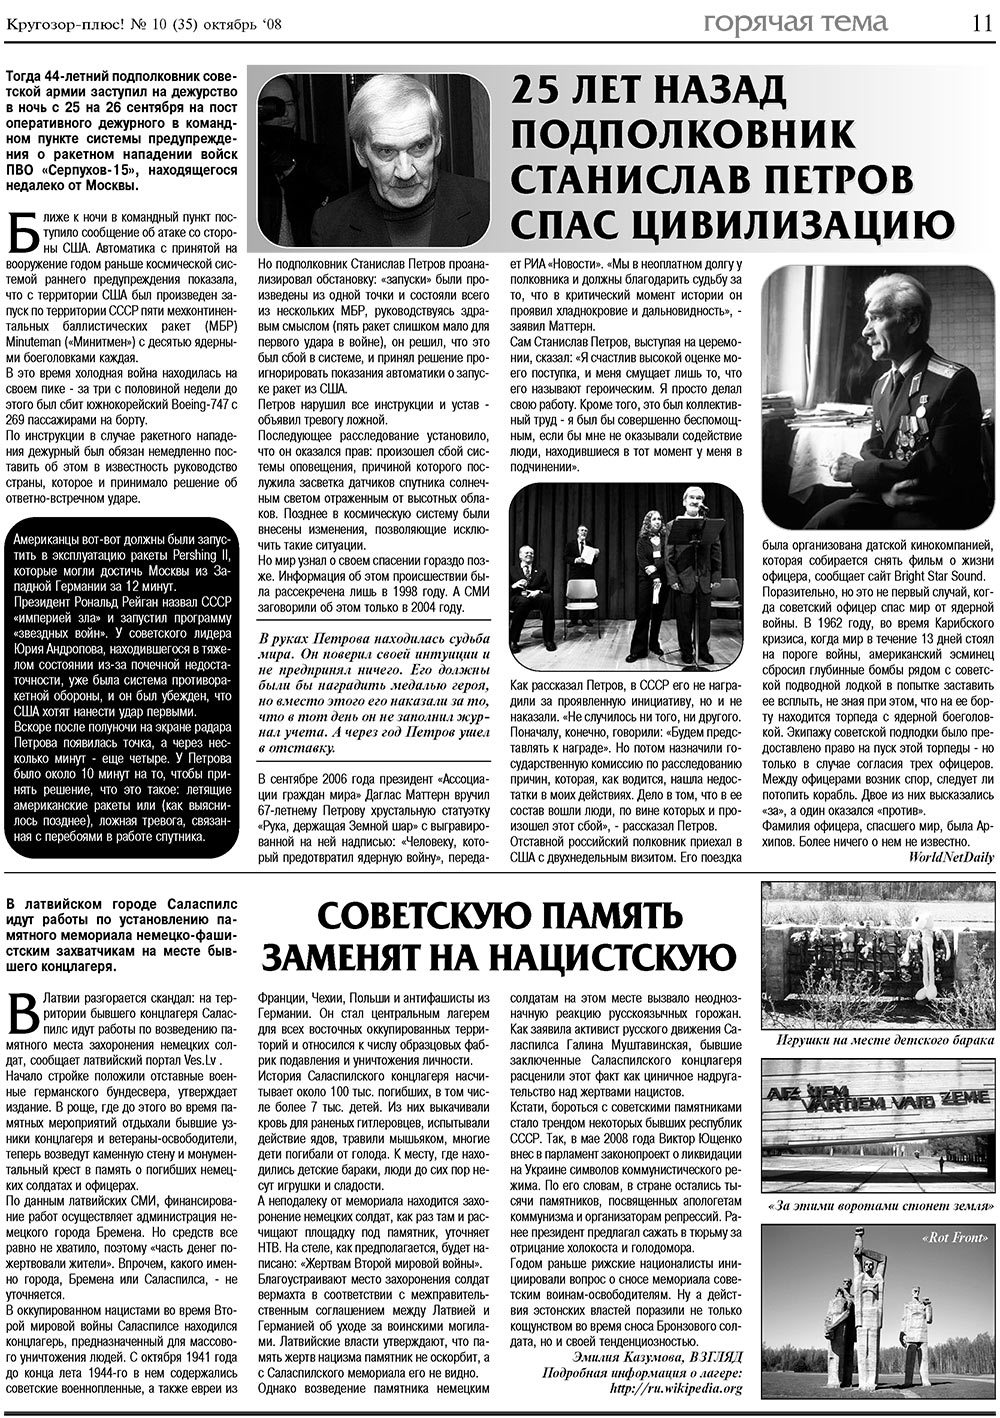 Кругозор плюс!, газета. 2008 №10 стр.11